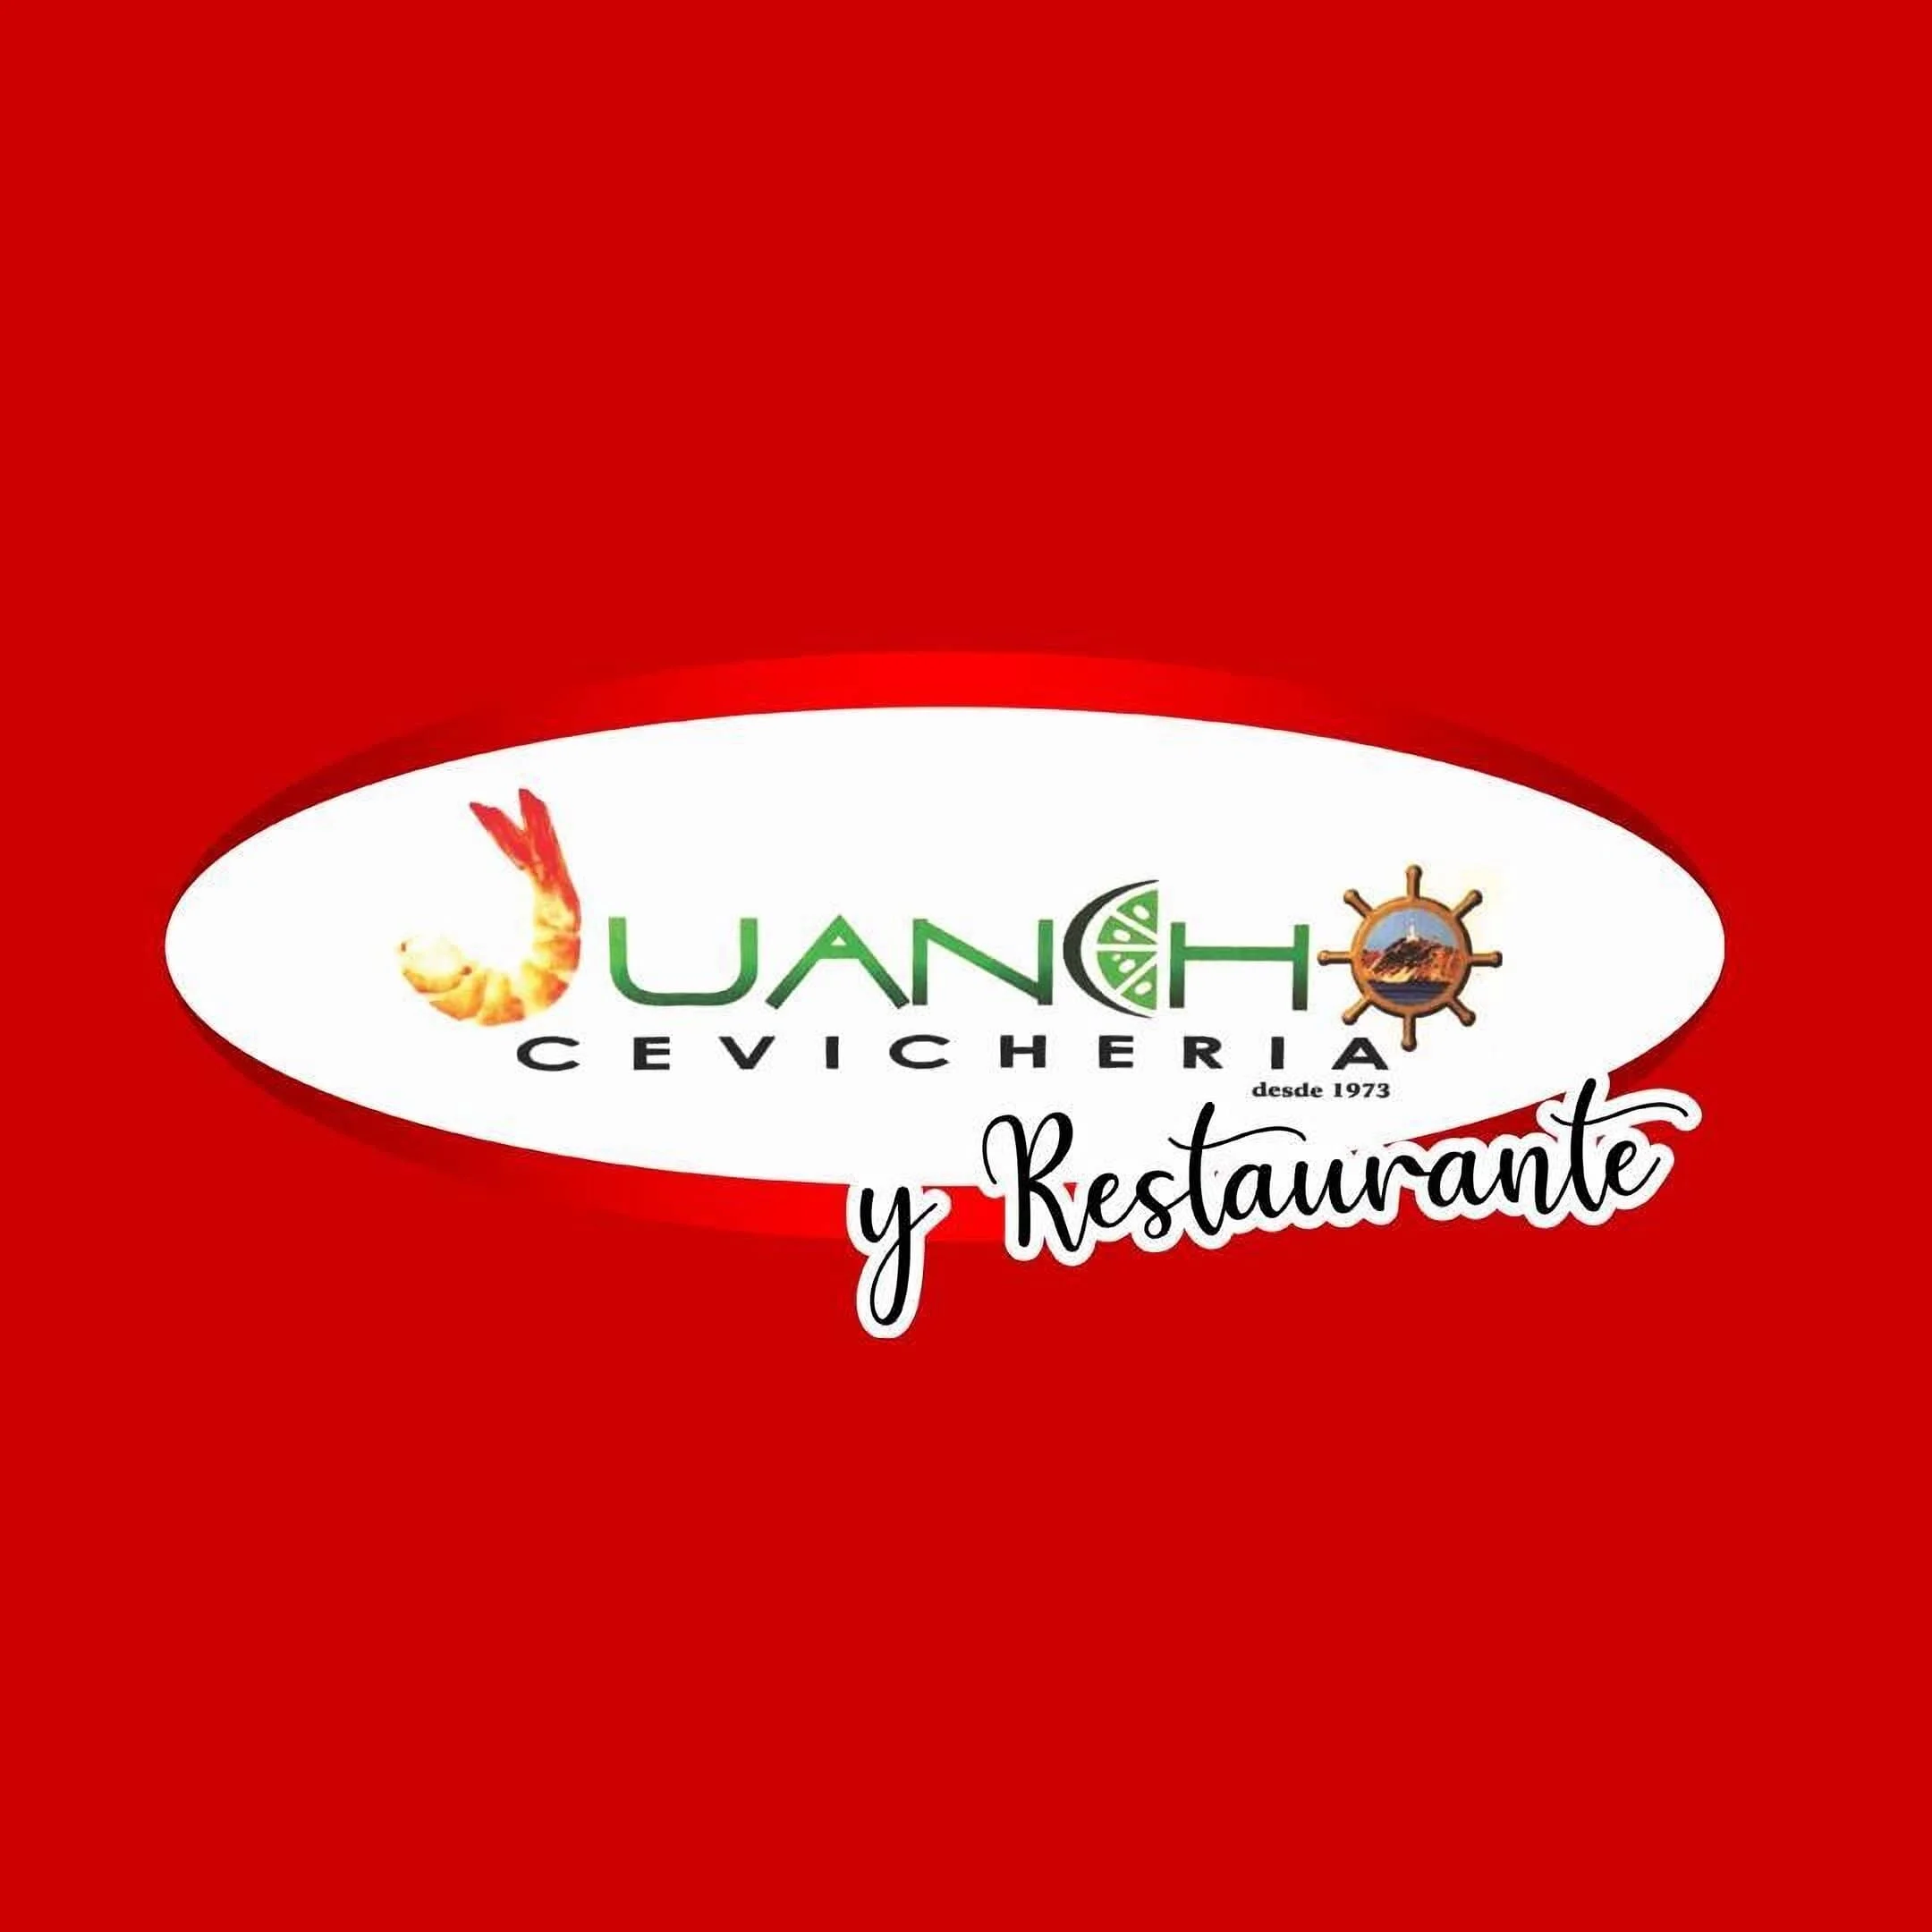 Restaurante-juancho-cevicheria-y-restaurante-24847